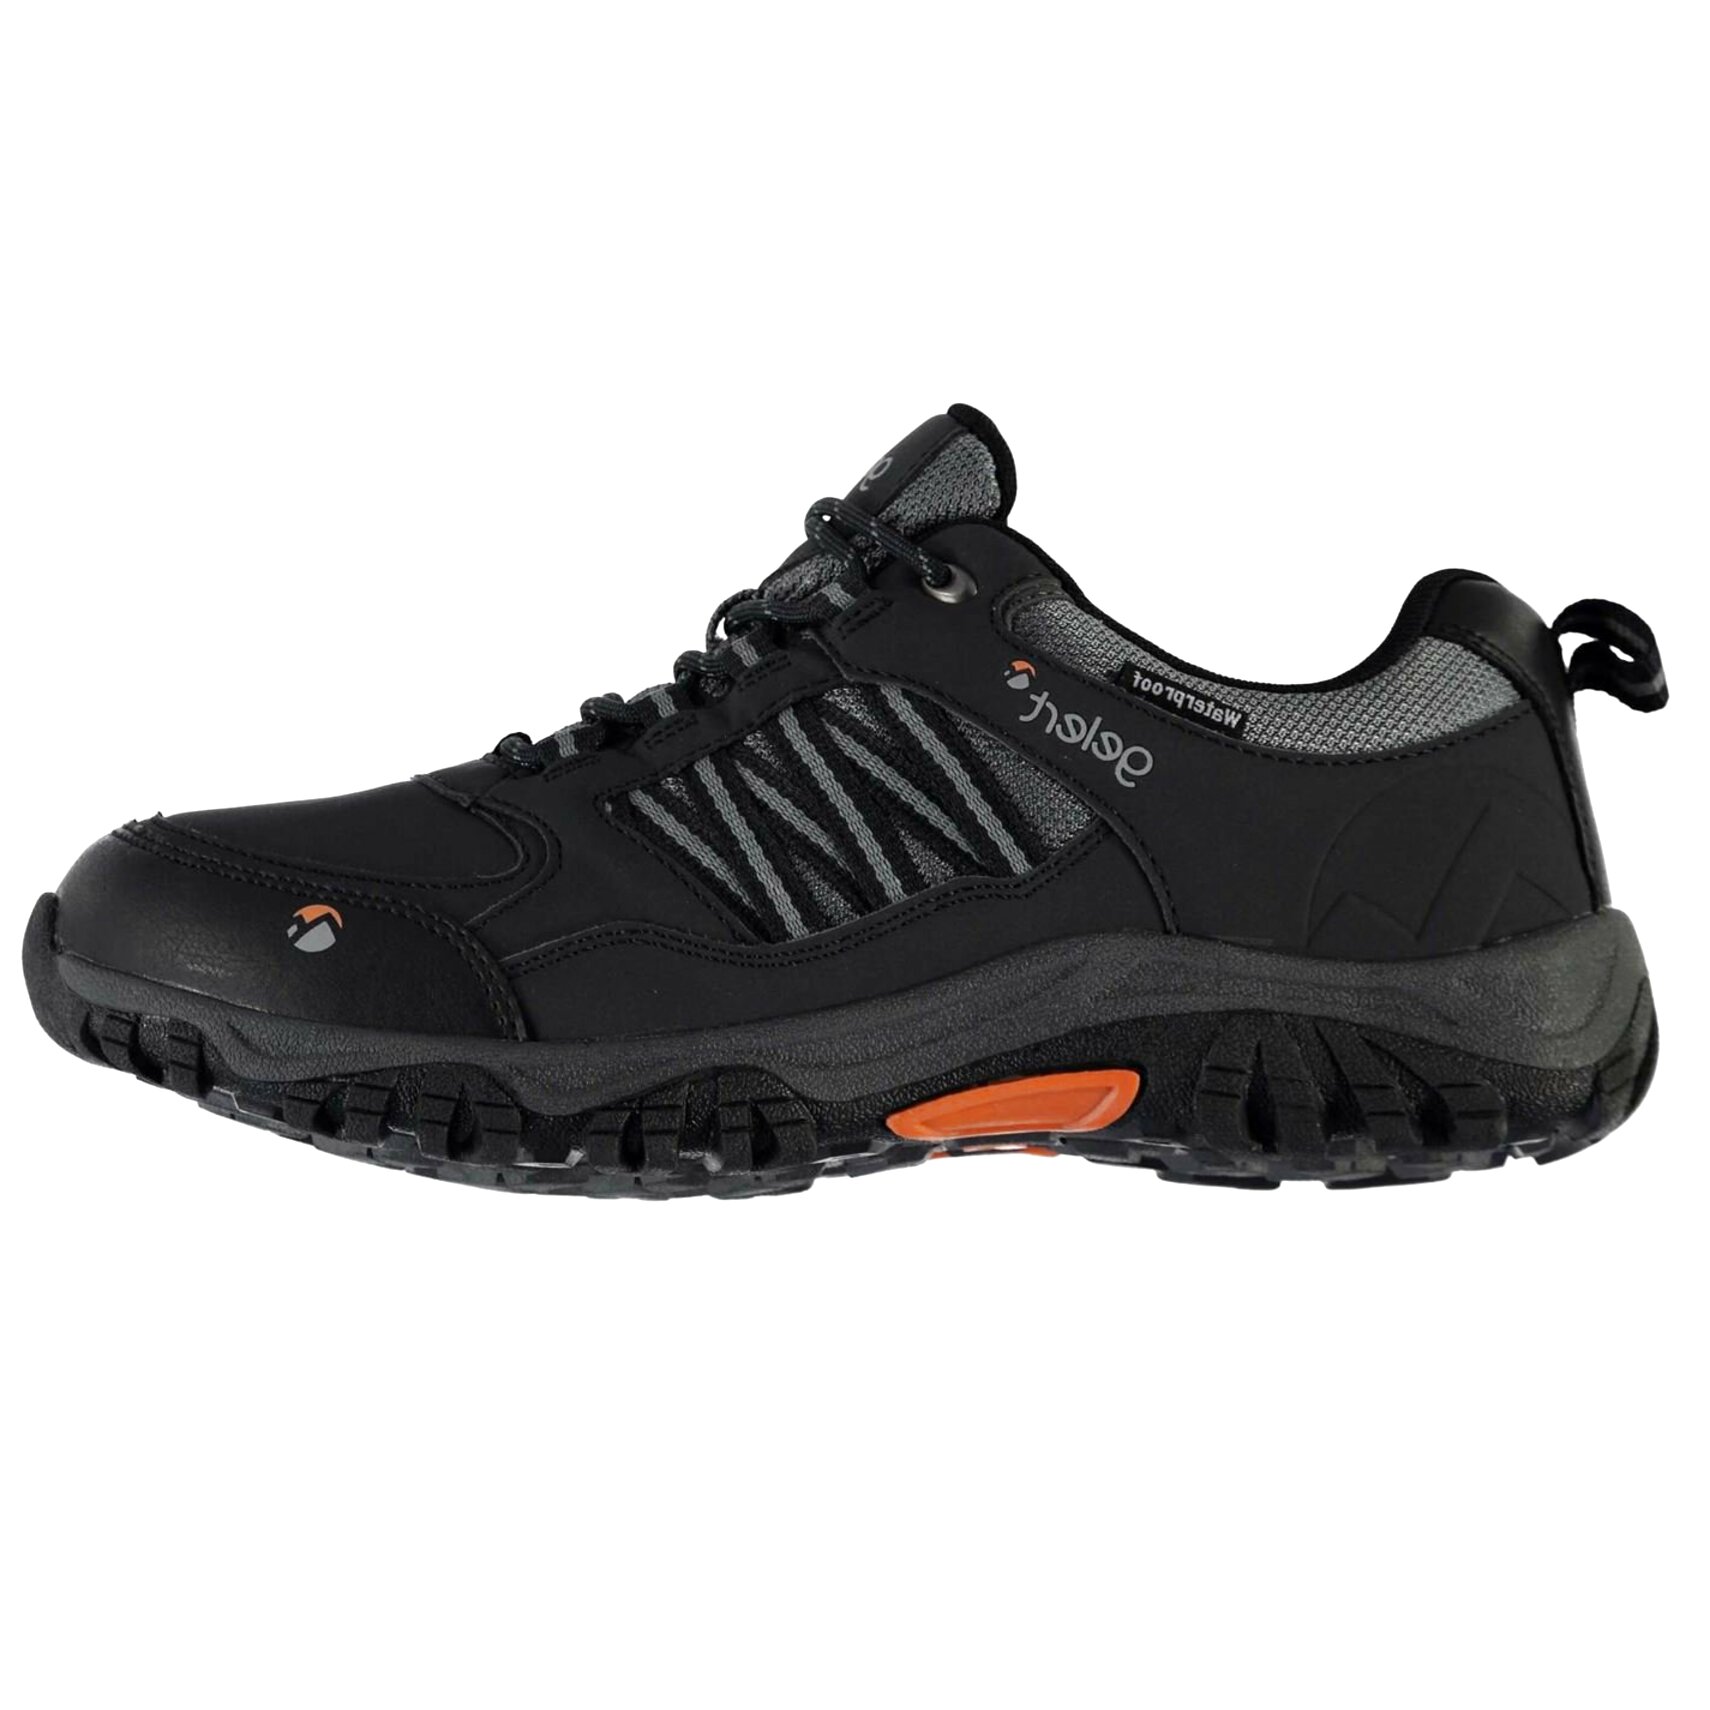 Mens Waterproof Walking Shoes for sale in UK | 70 used Mens Waterproof ...